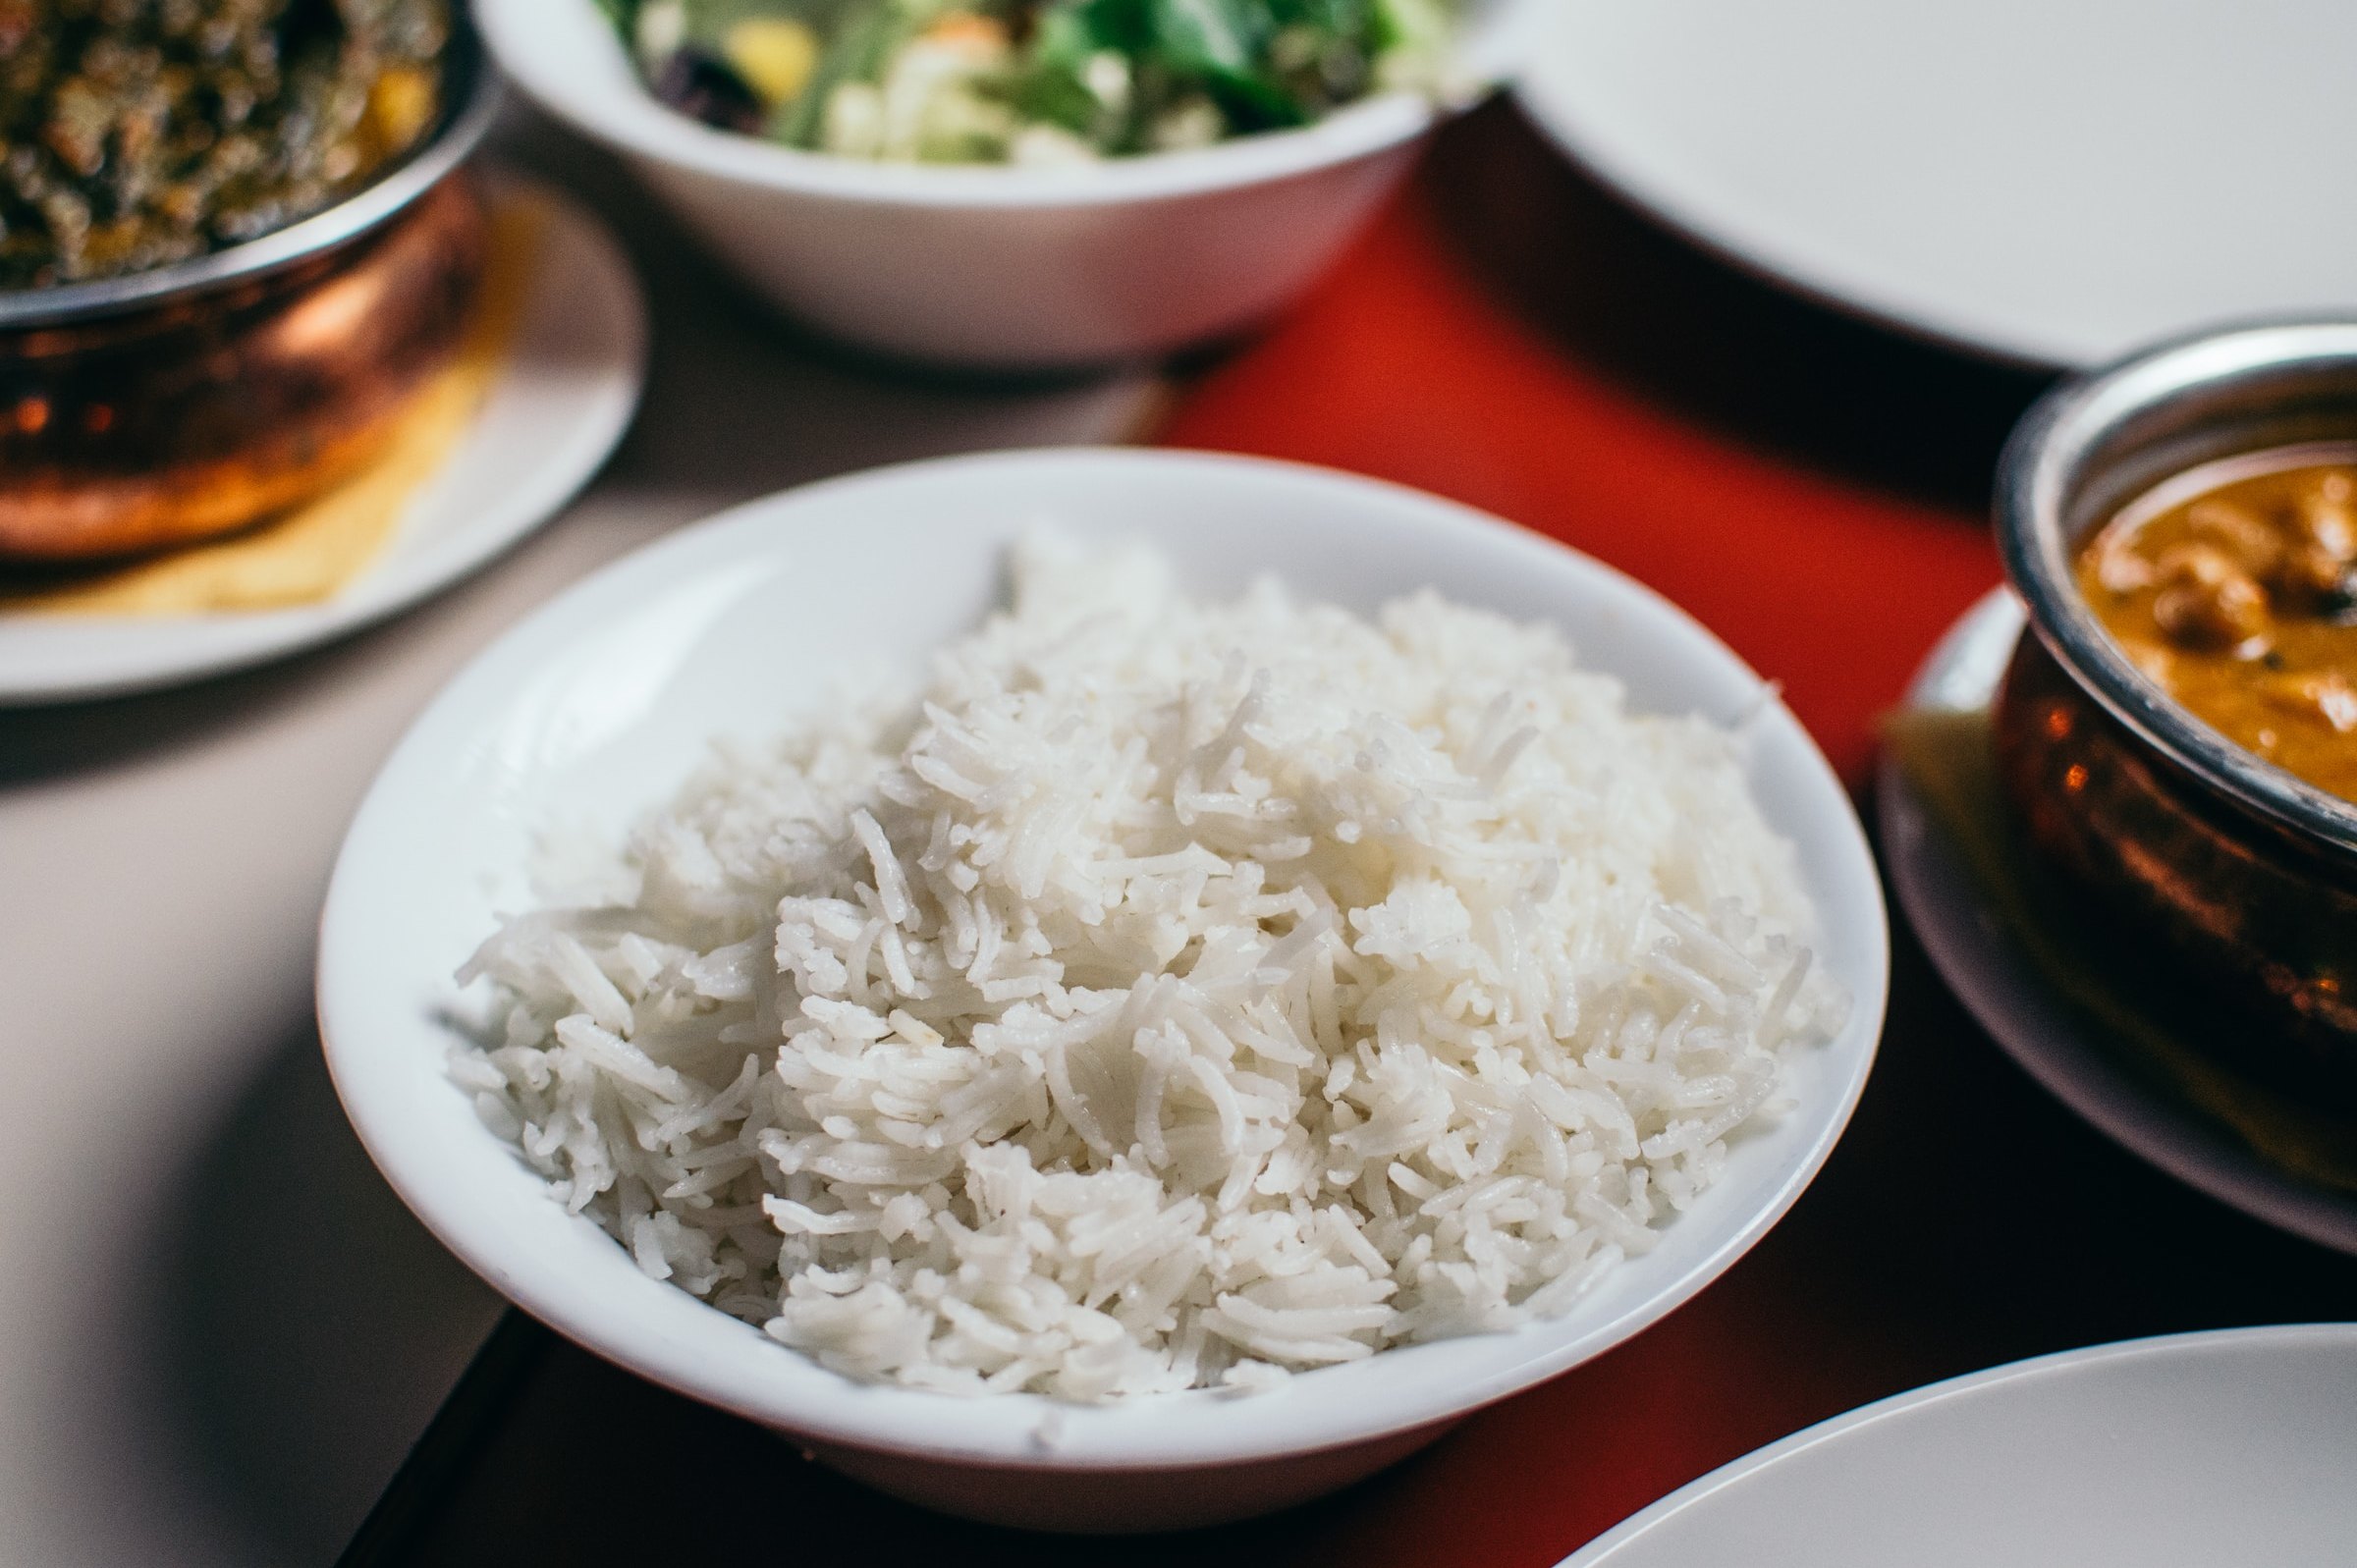 Как правильно варить рис, чтобы он был рассыпчатым